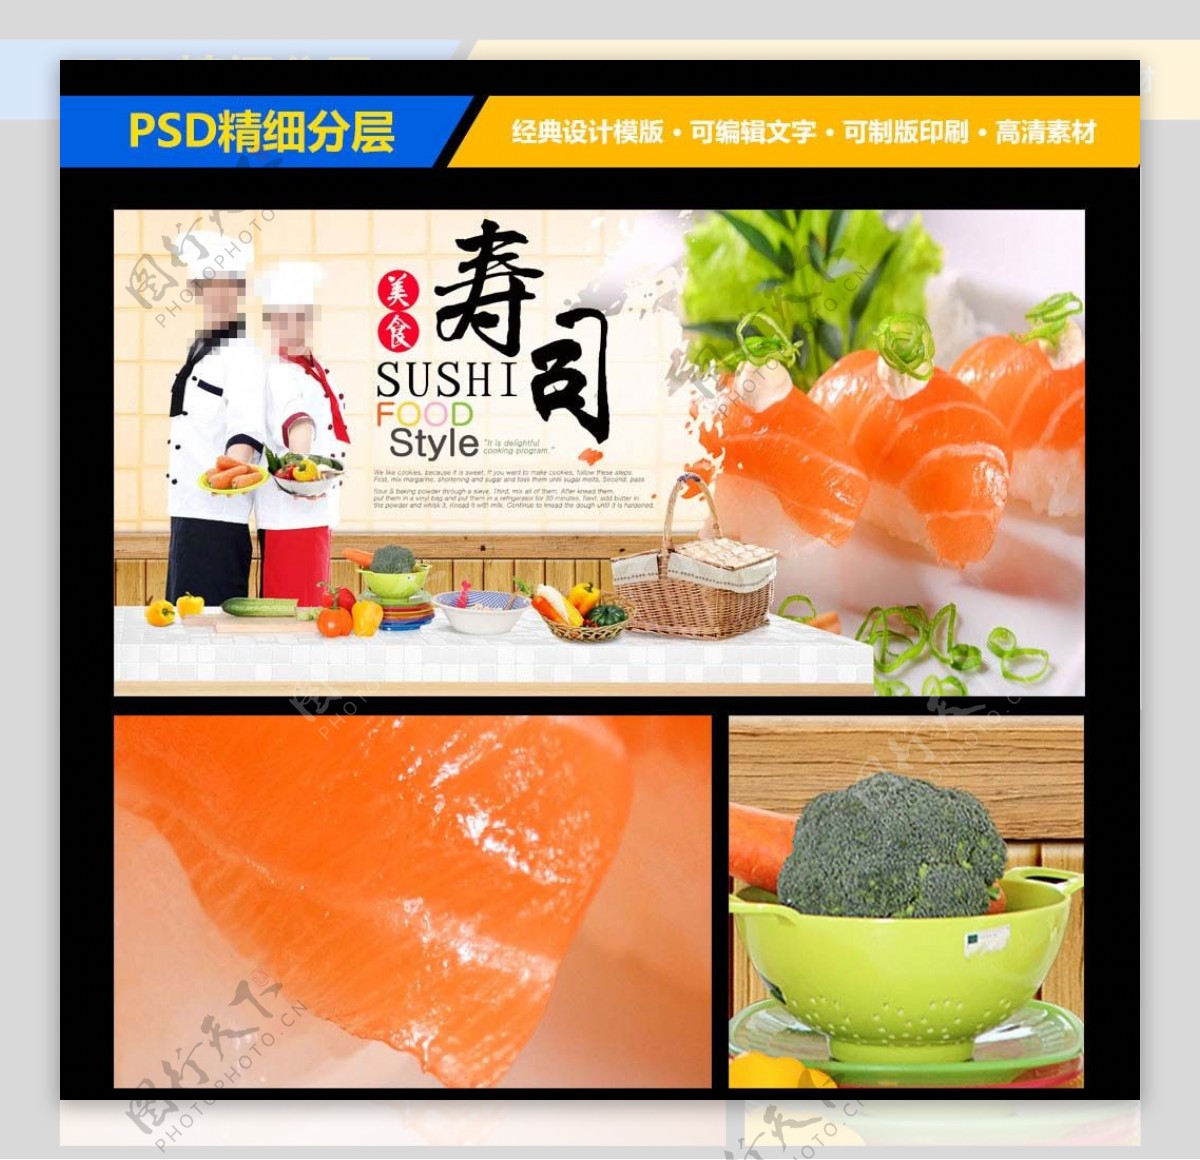 美食寿司美味食品宣传海报设计